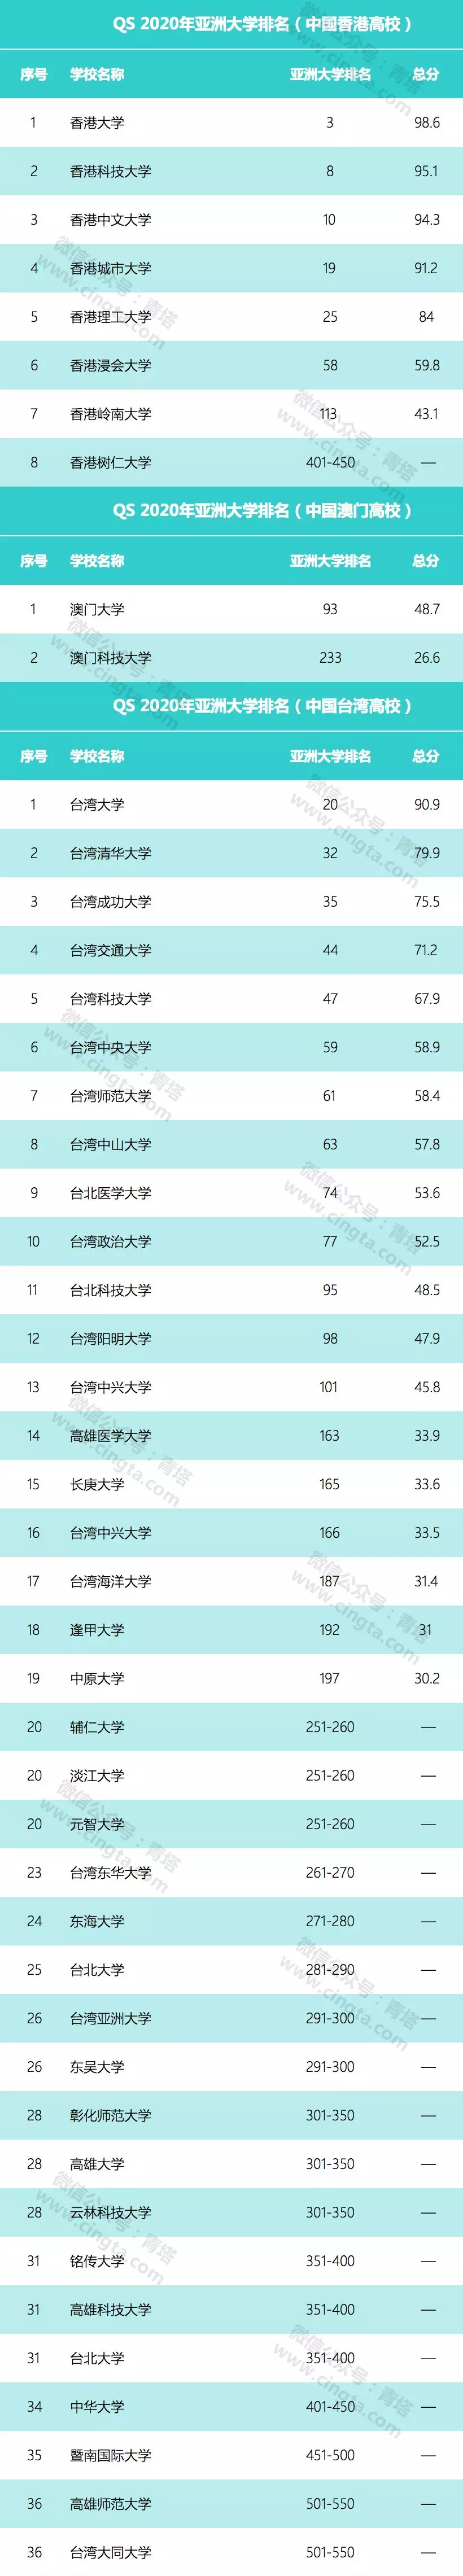 亚洲大学top100排行榜.png